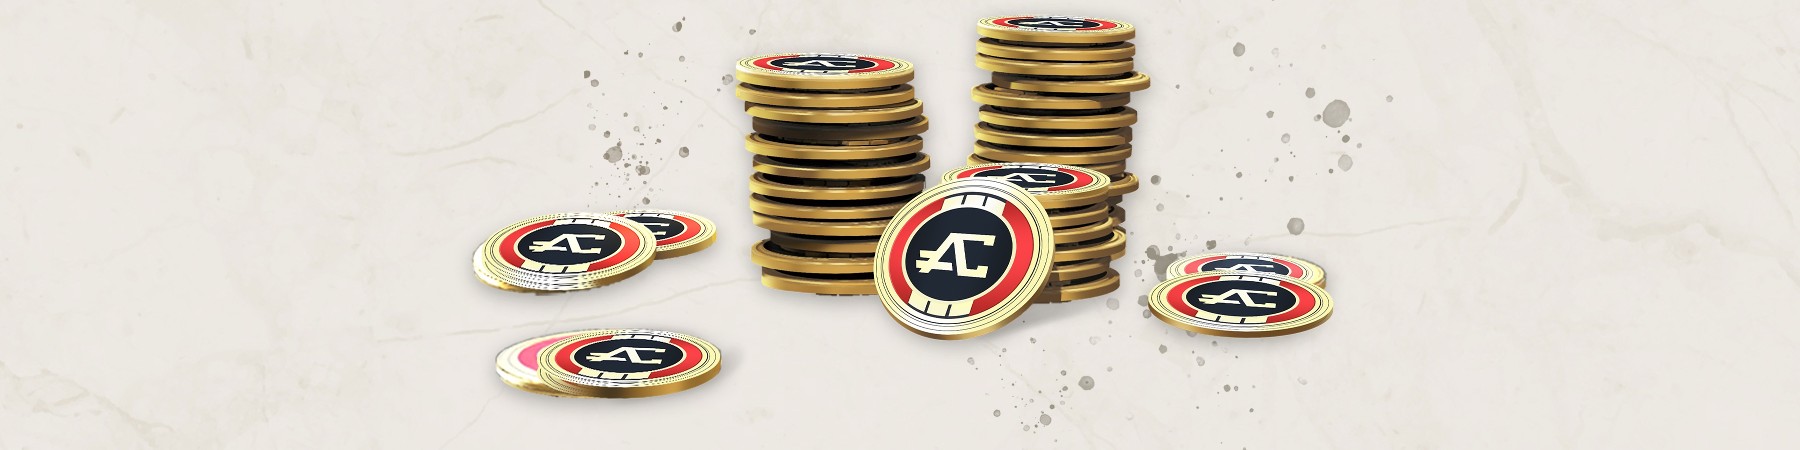 Apex Legends™ - 500 Apex Coins for PC | Origin